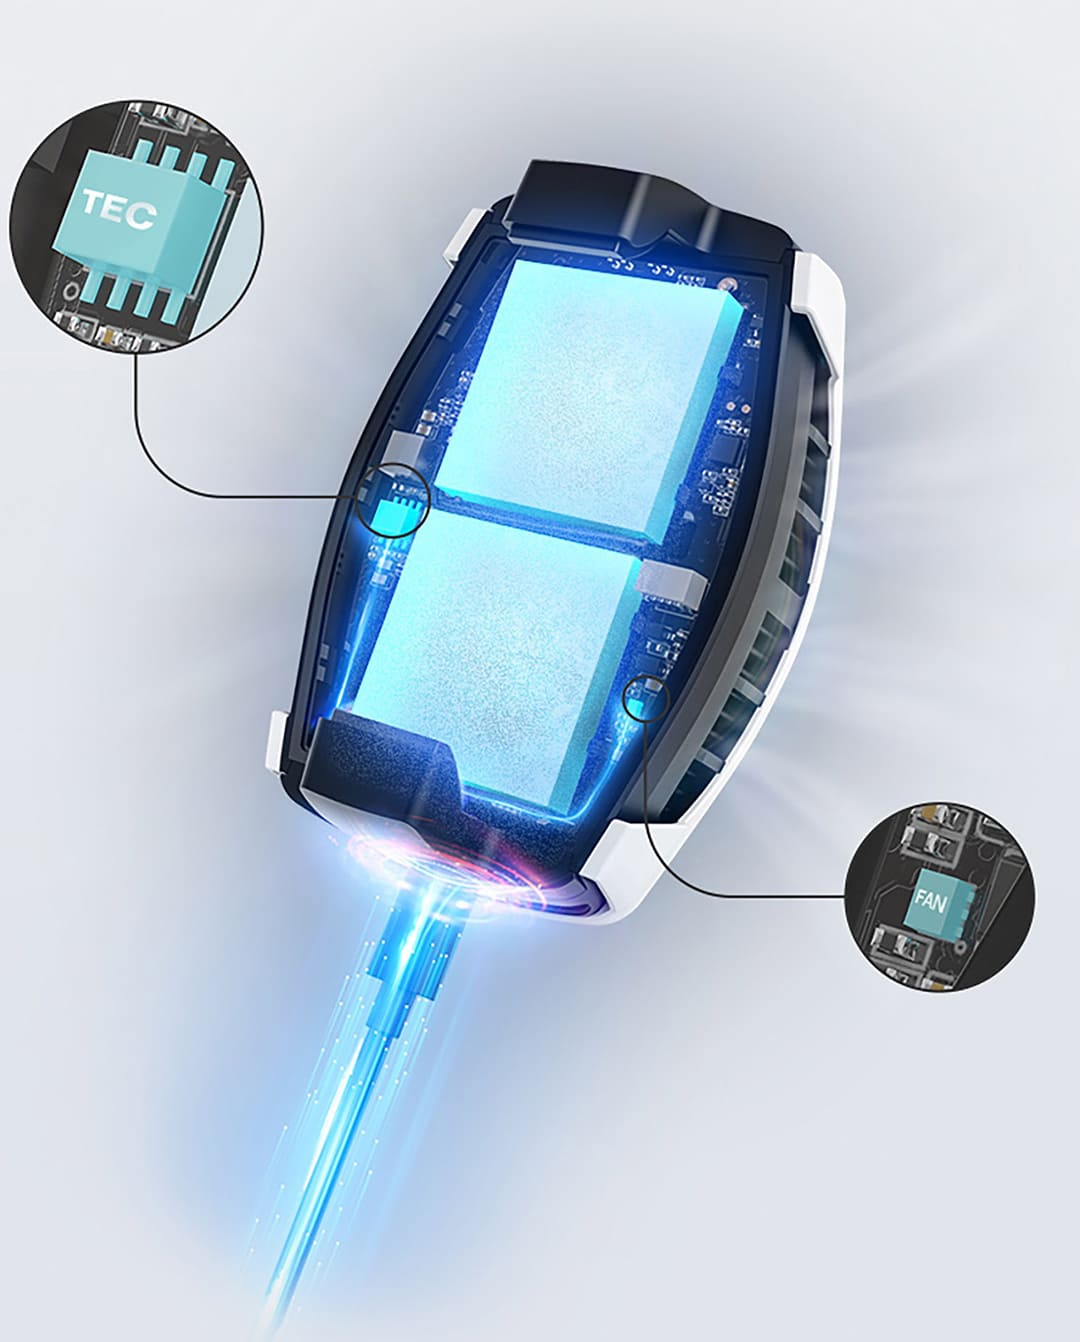 OnePlus Phone Cooler